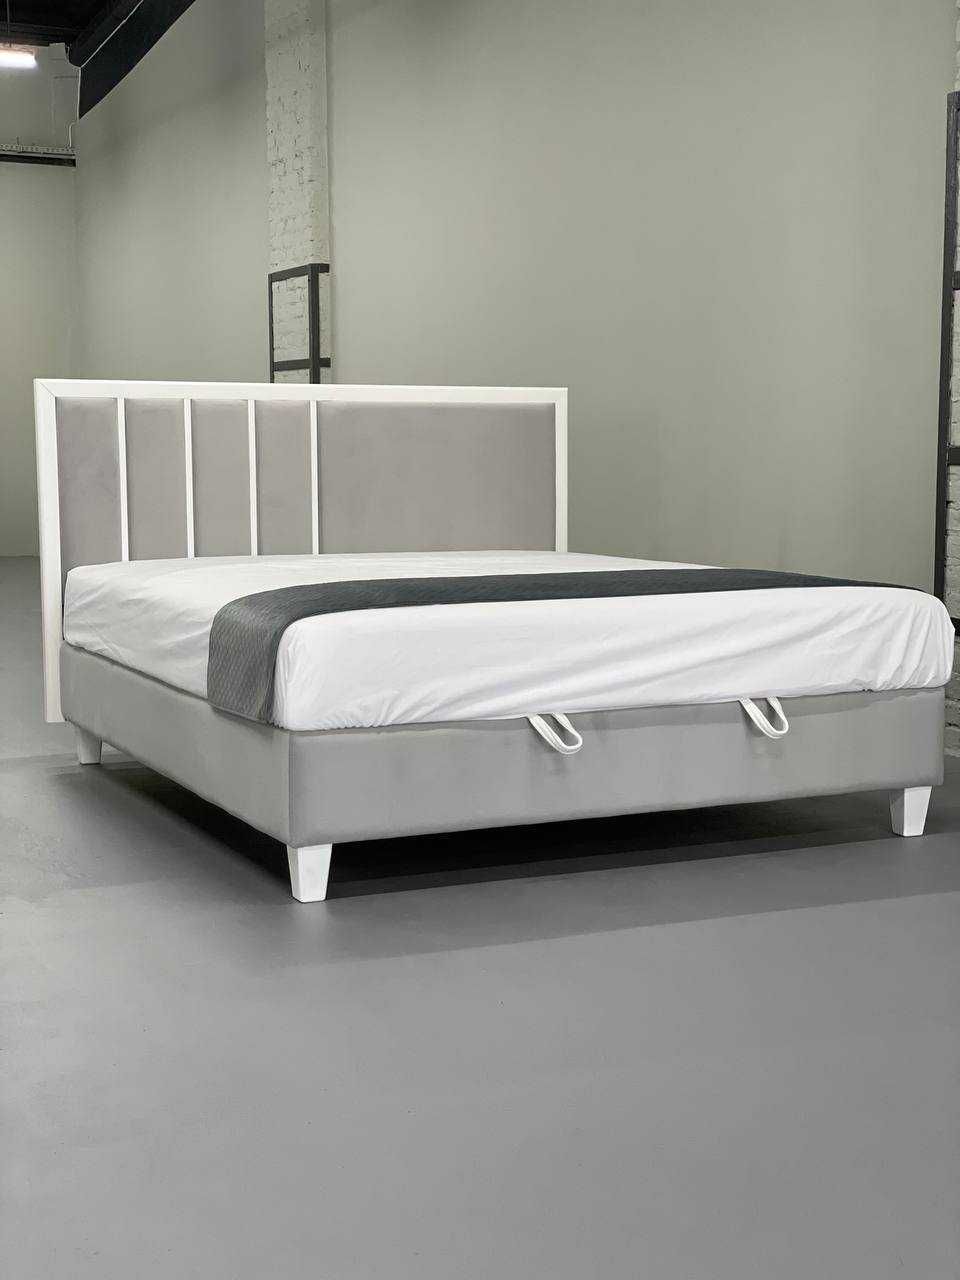 М'яке ліжко з матрацом Інфініті, Ліжко в наявності Рівне, 21500 грн